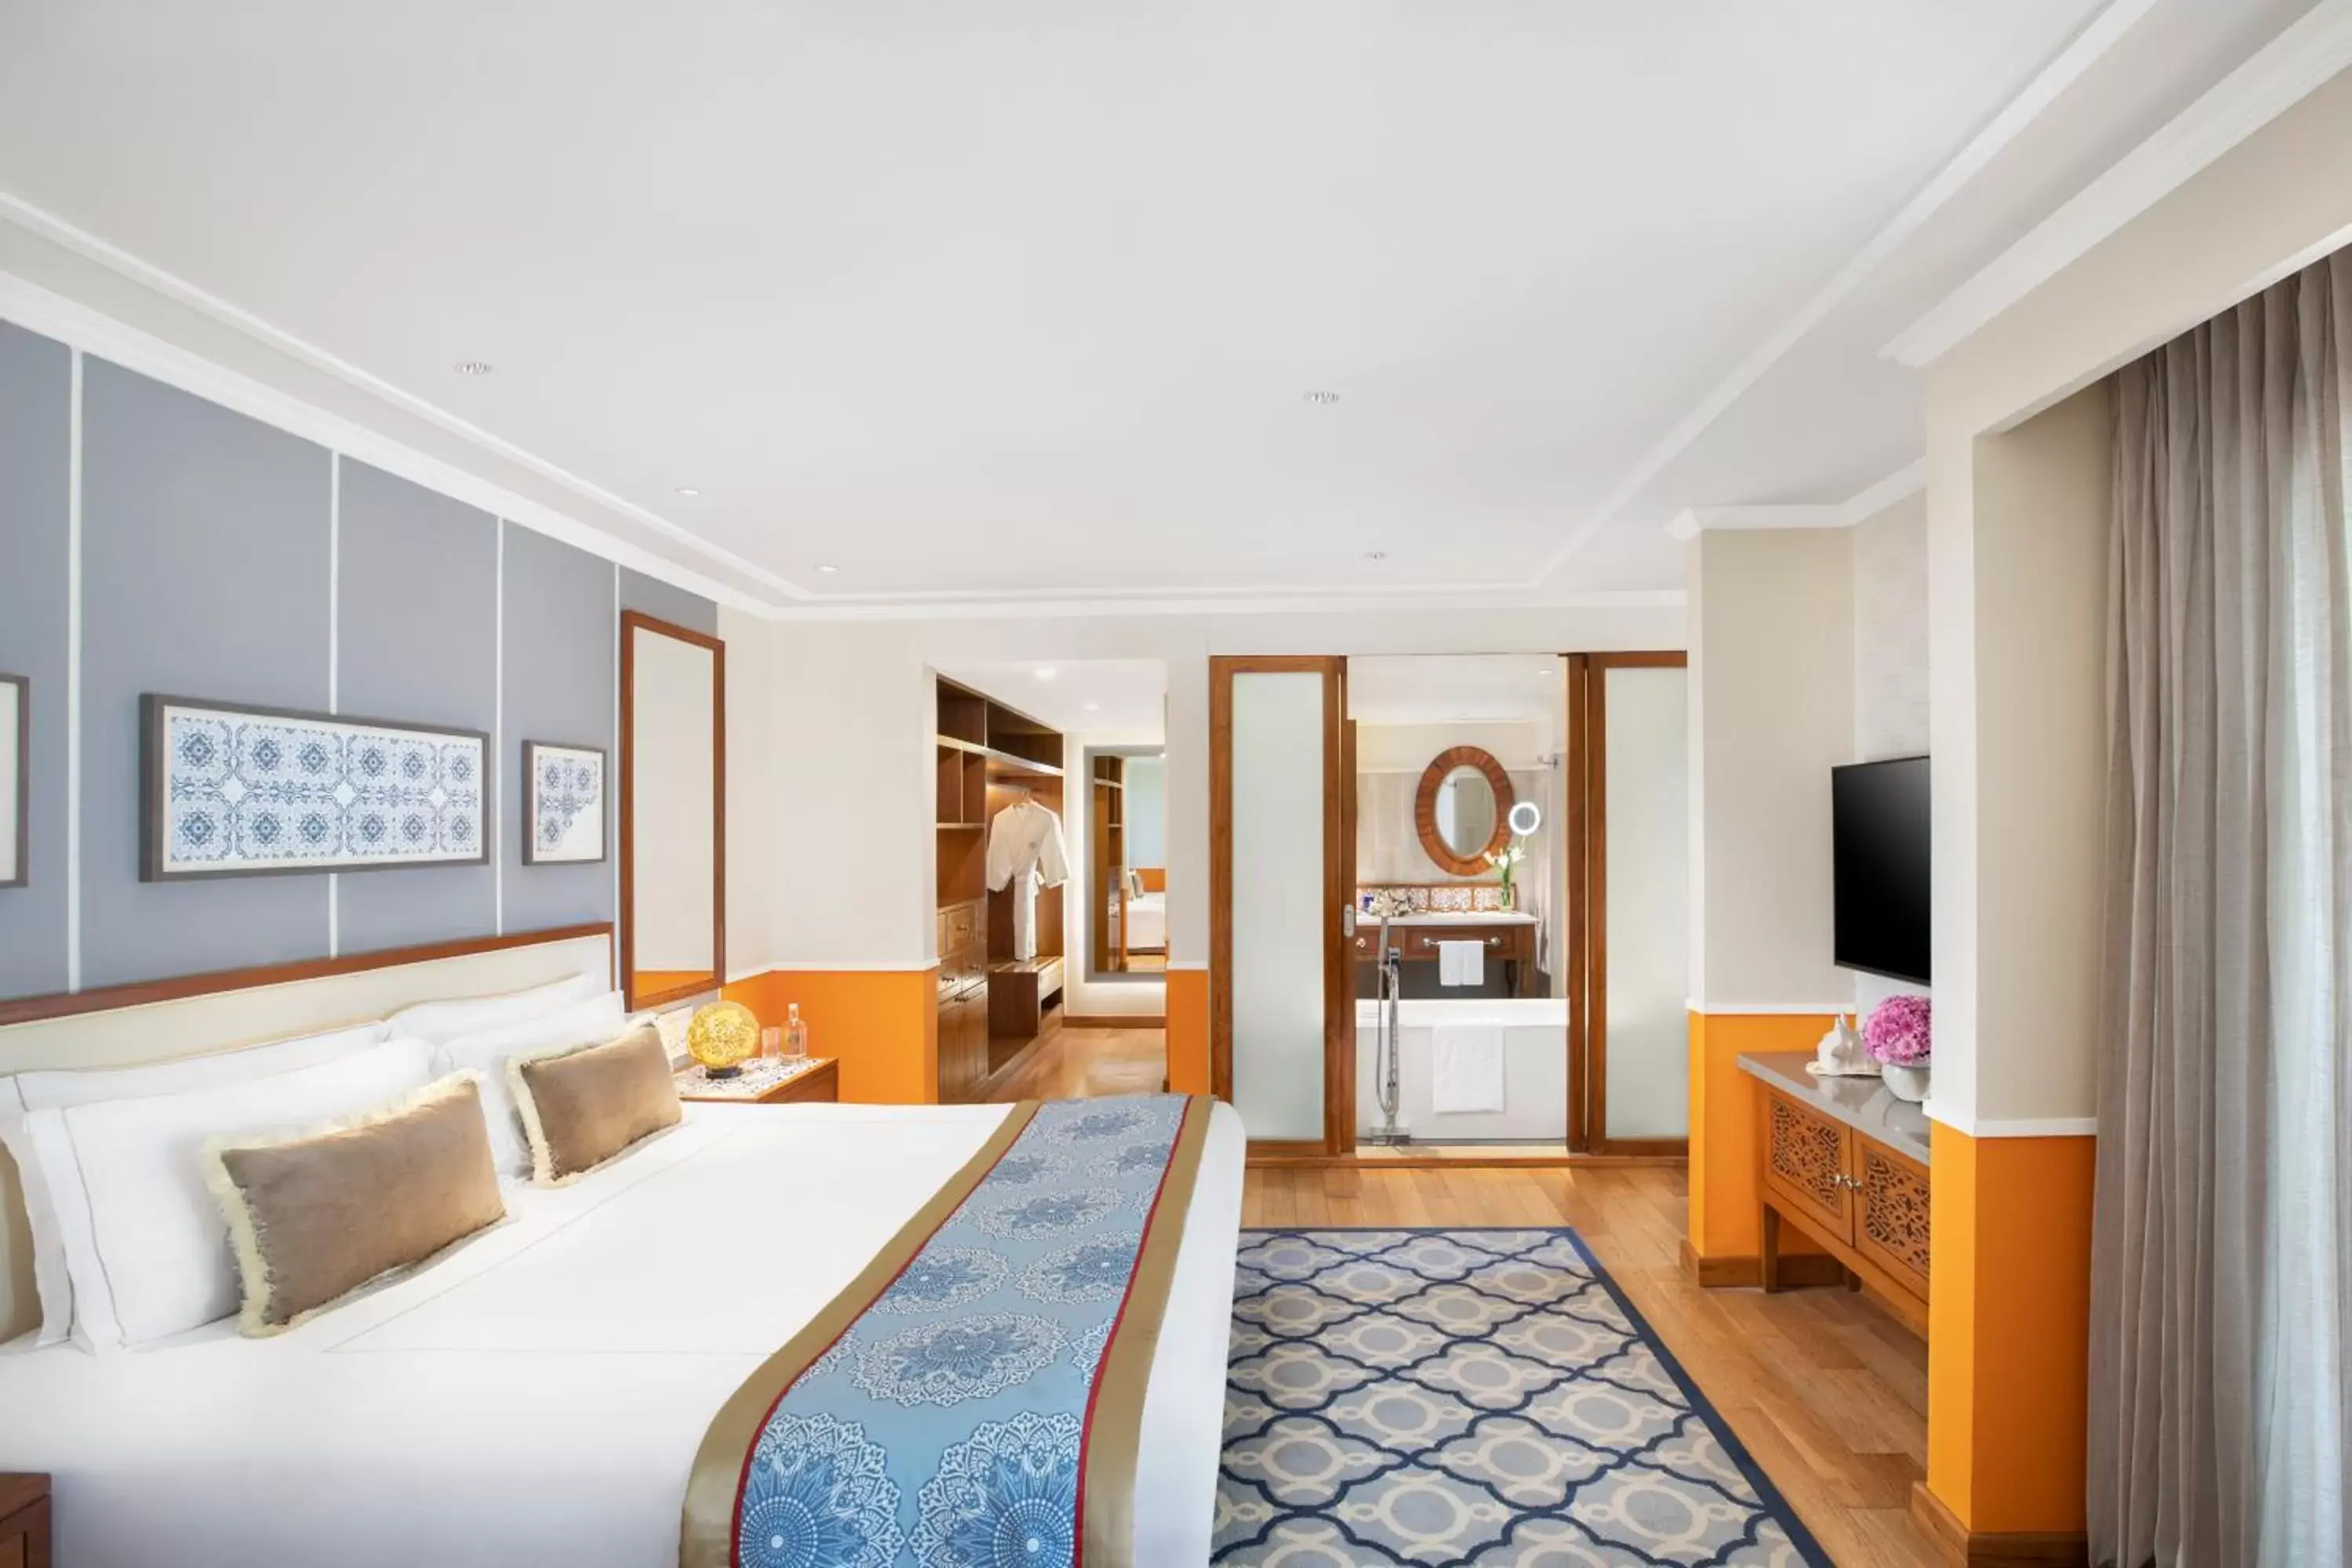 Bedroom in Taj Exotica Resort & Spa, Goa